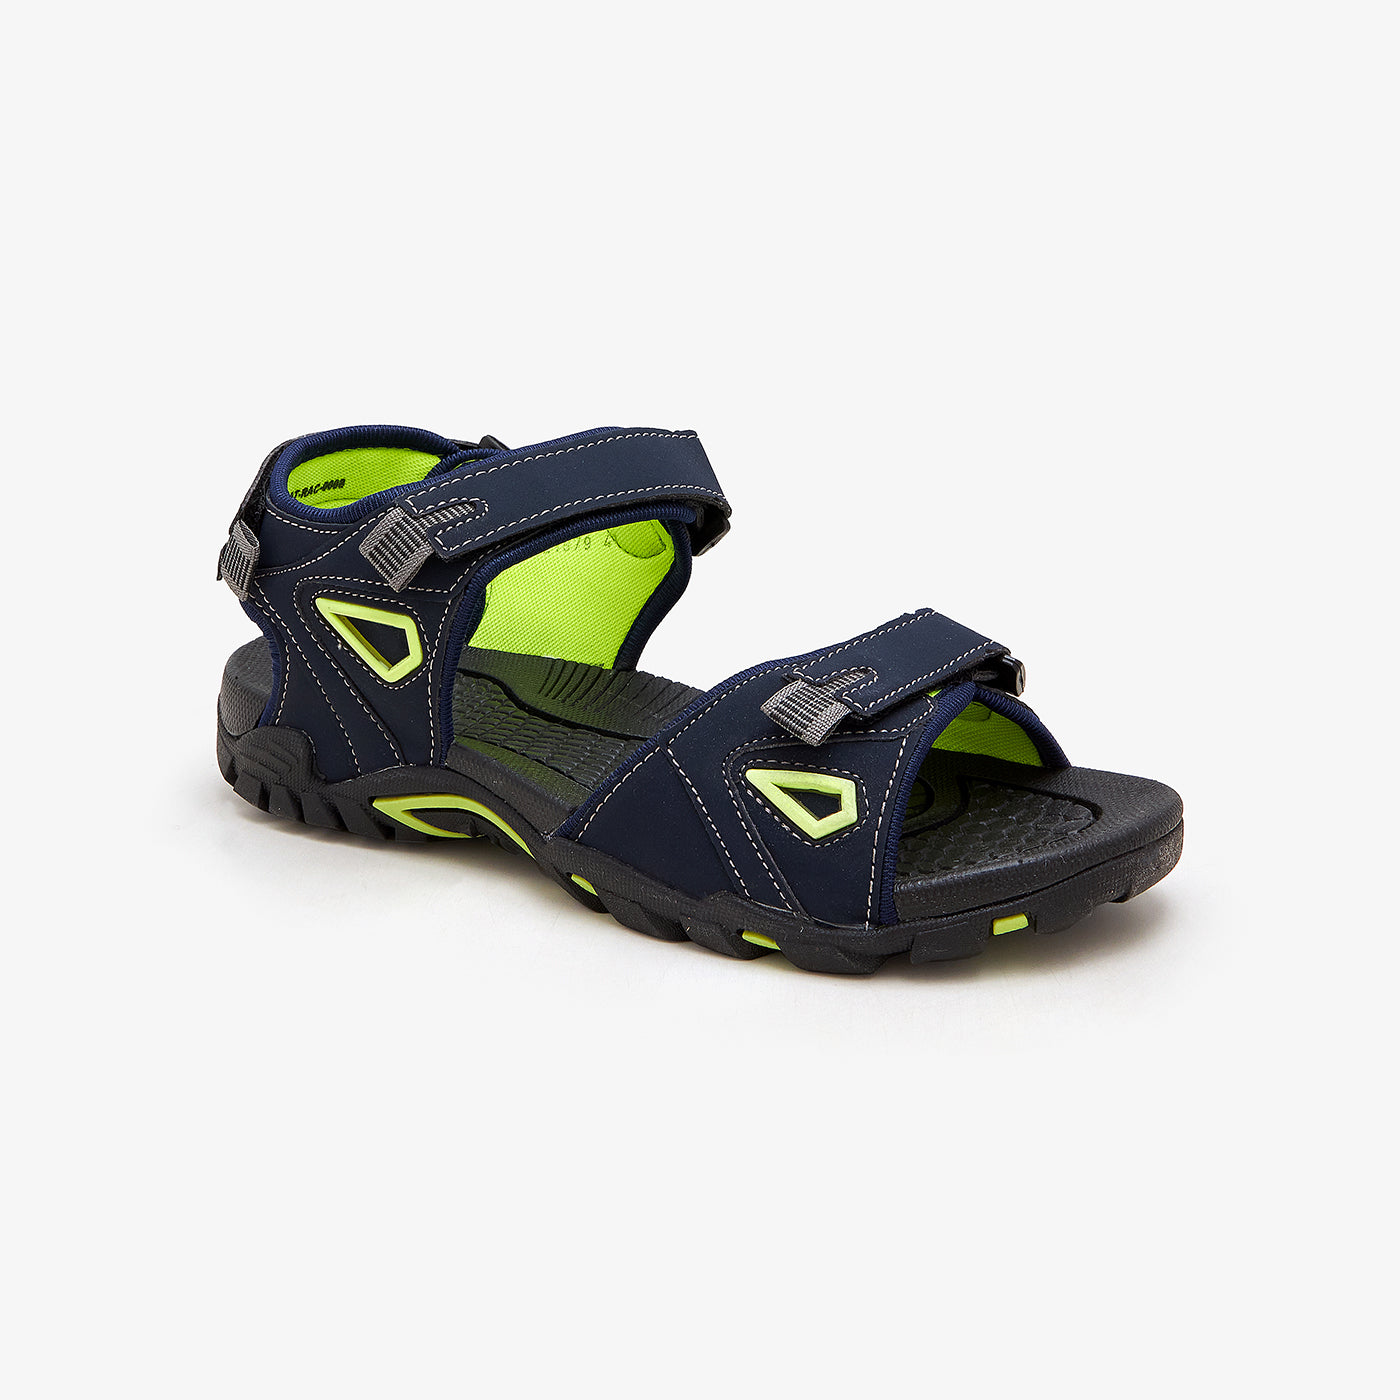 Men's Padded Sandals